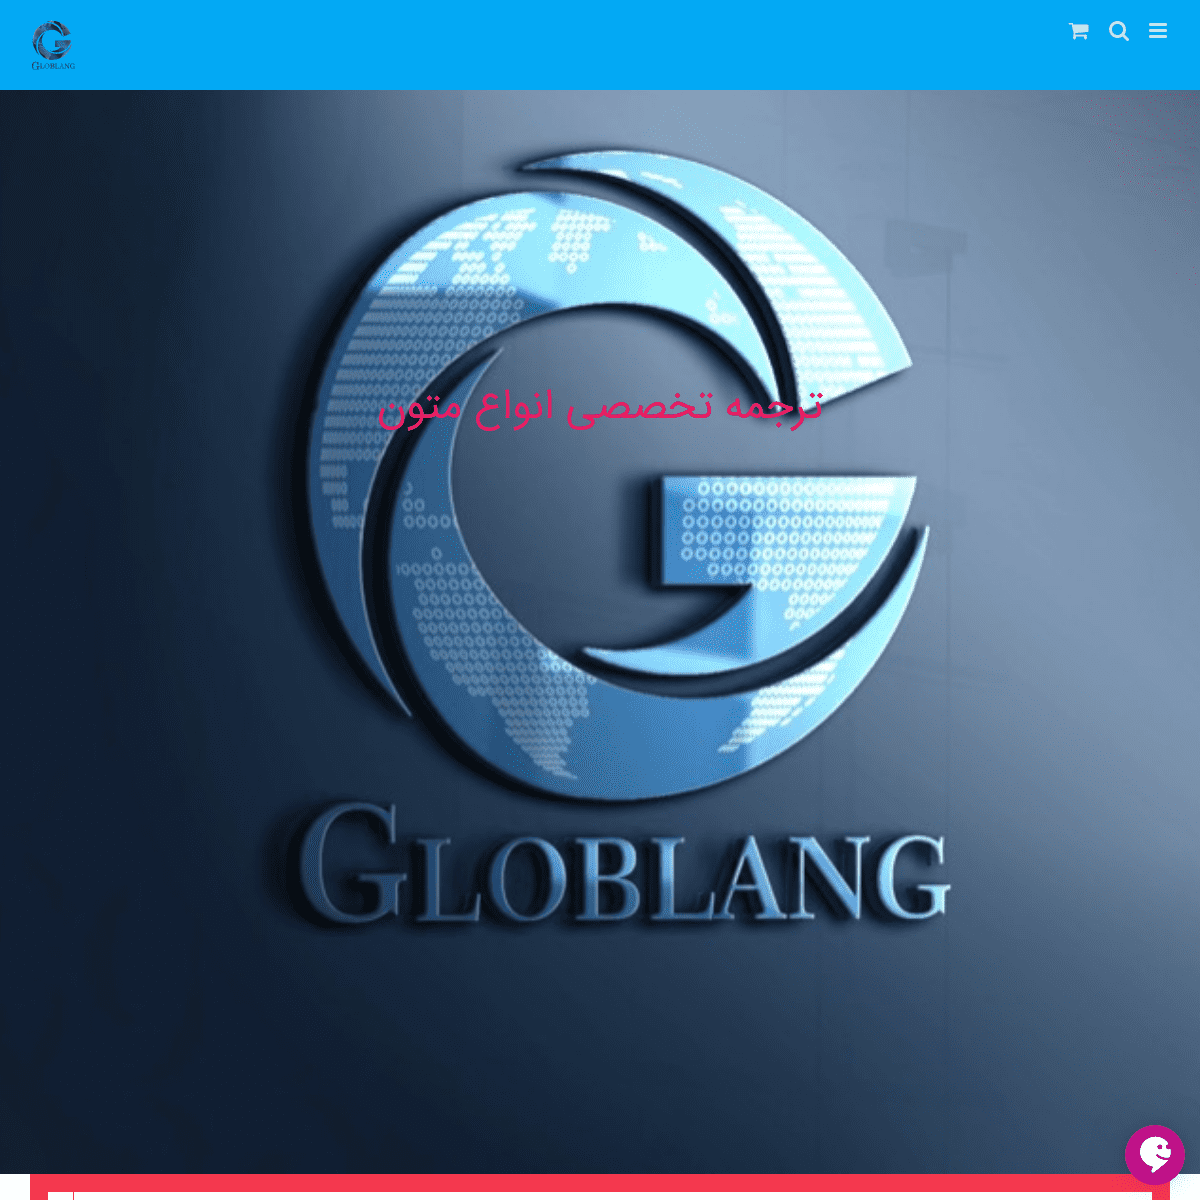 A complete backup of globelang.com